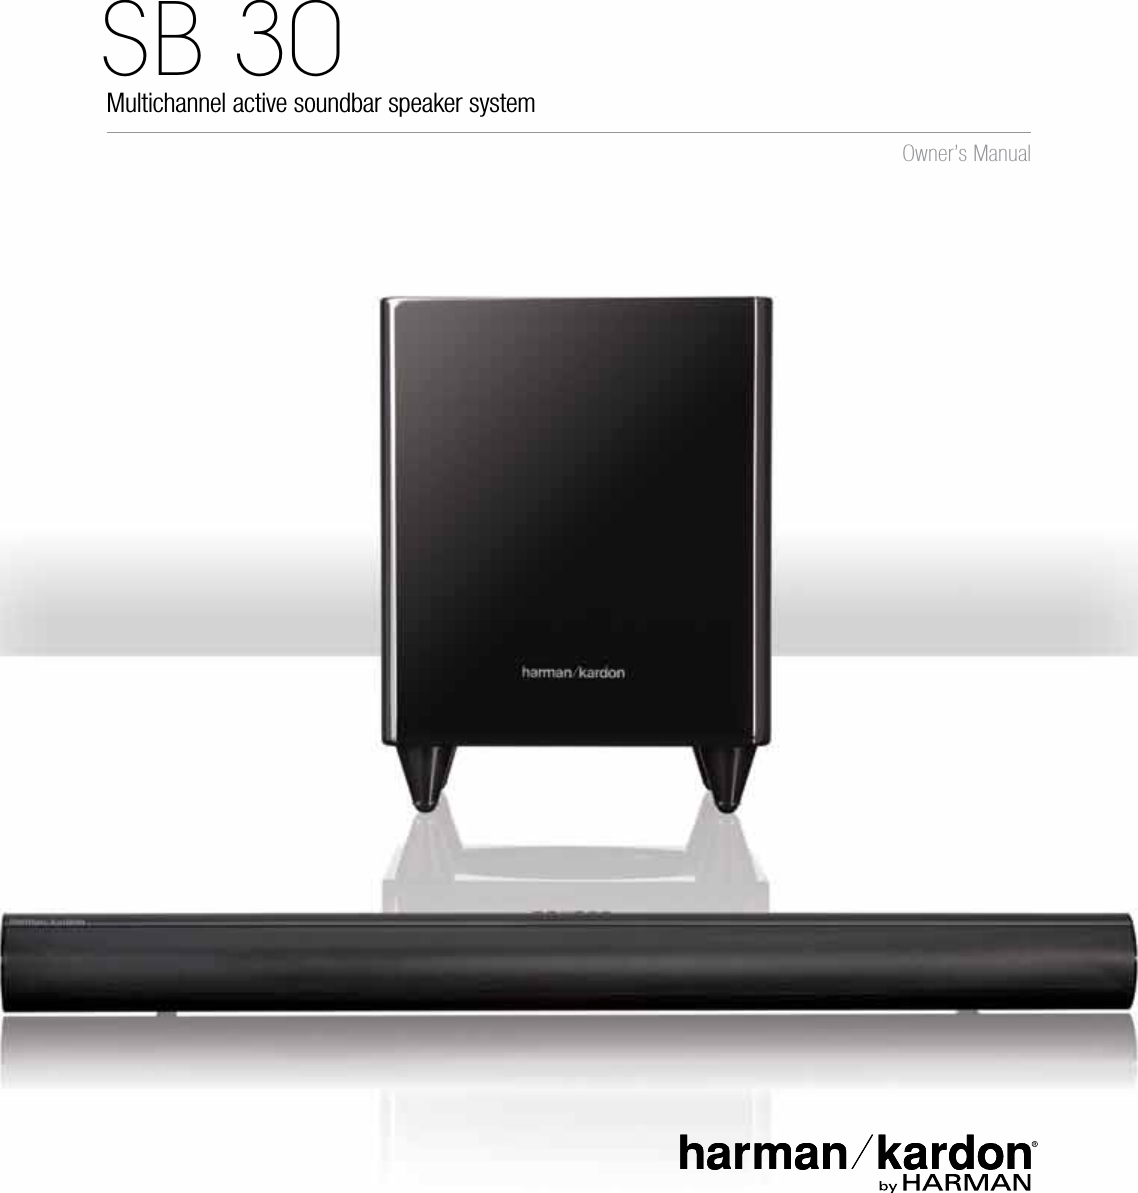 Multichannel active soundbar speaker systemSB 30 Owner’s Manual